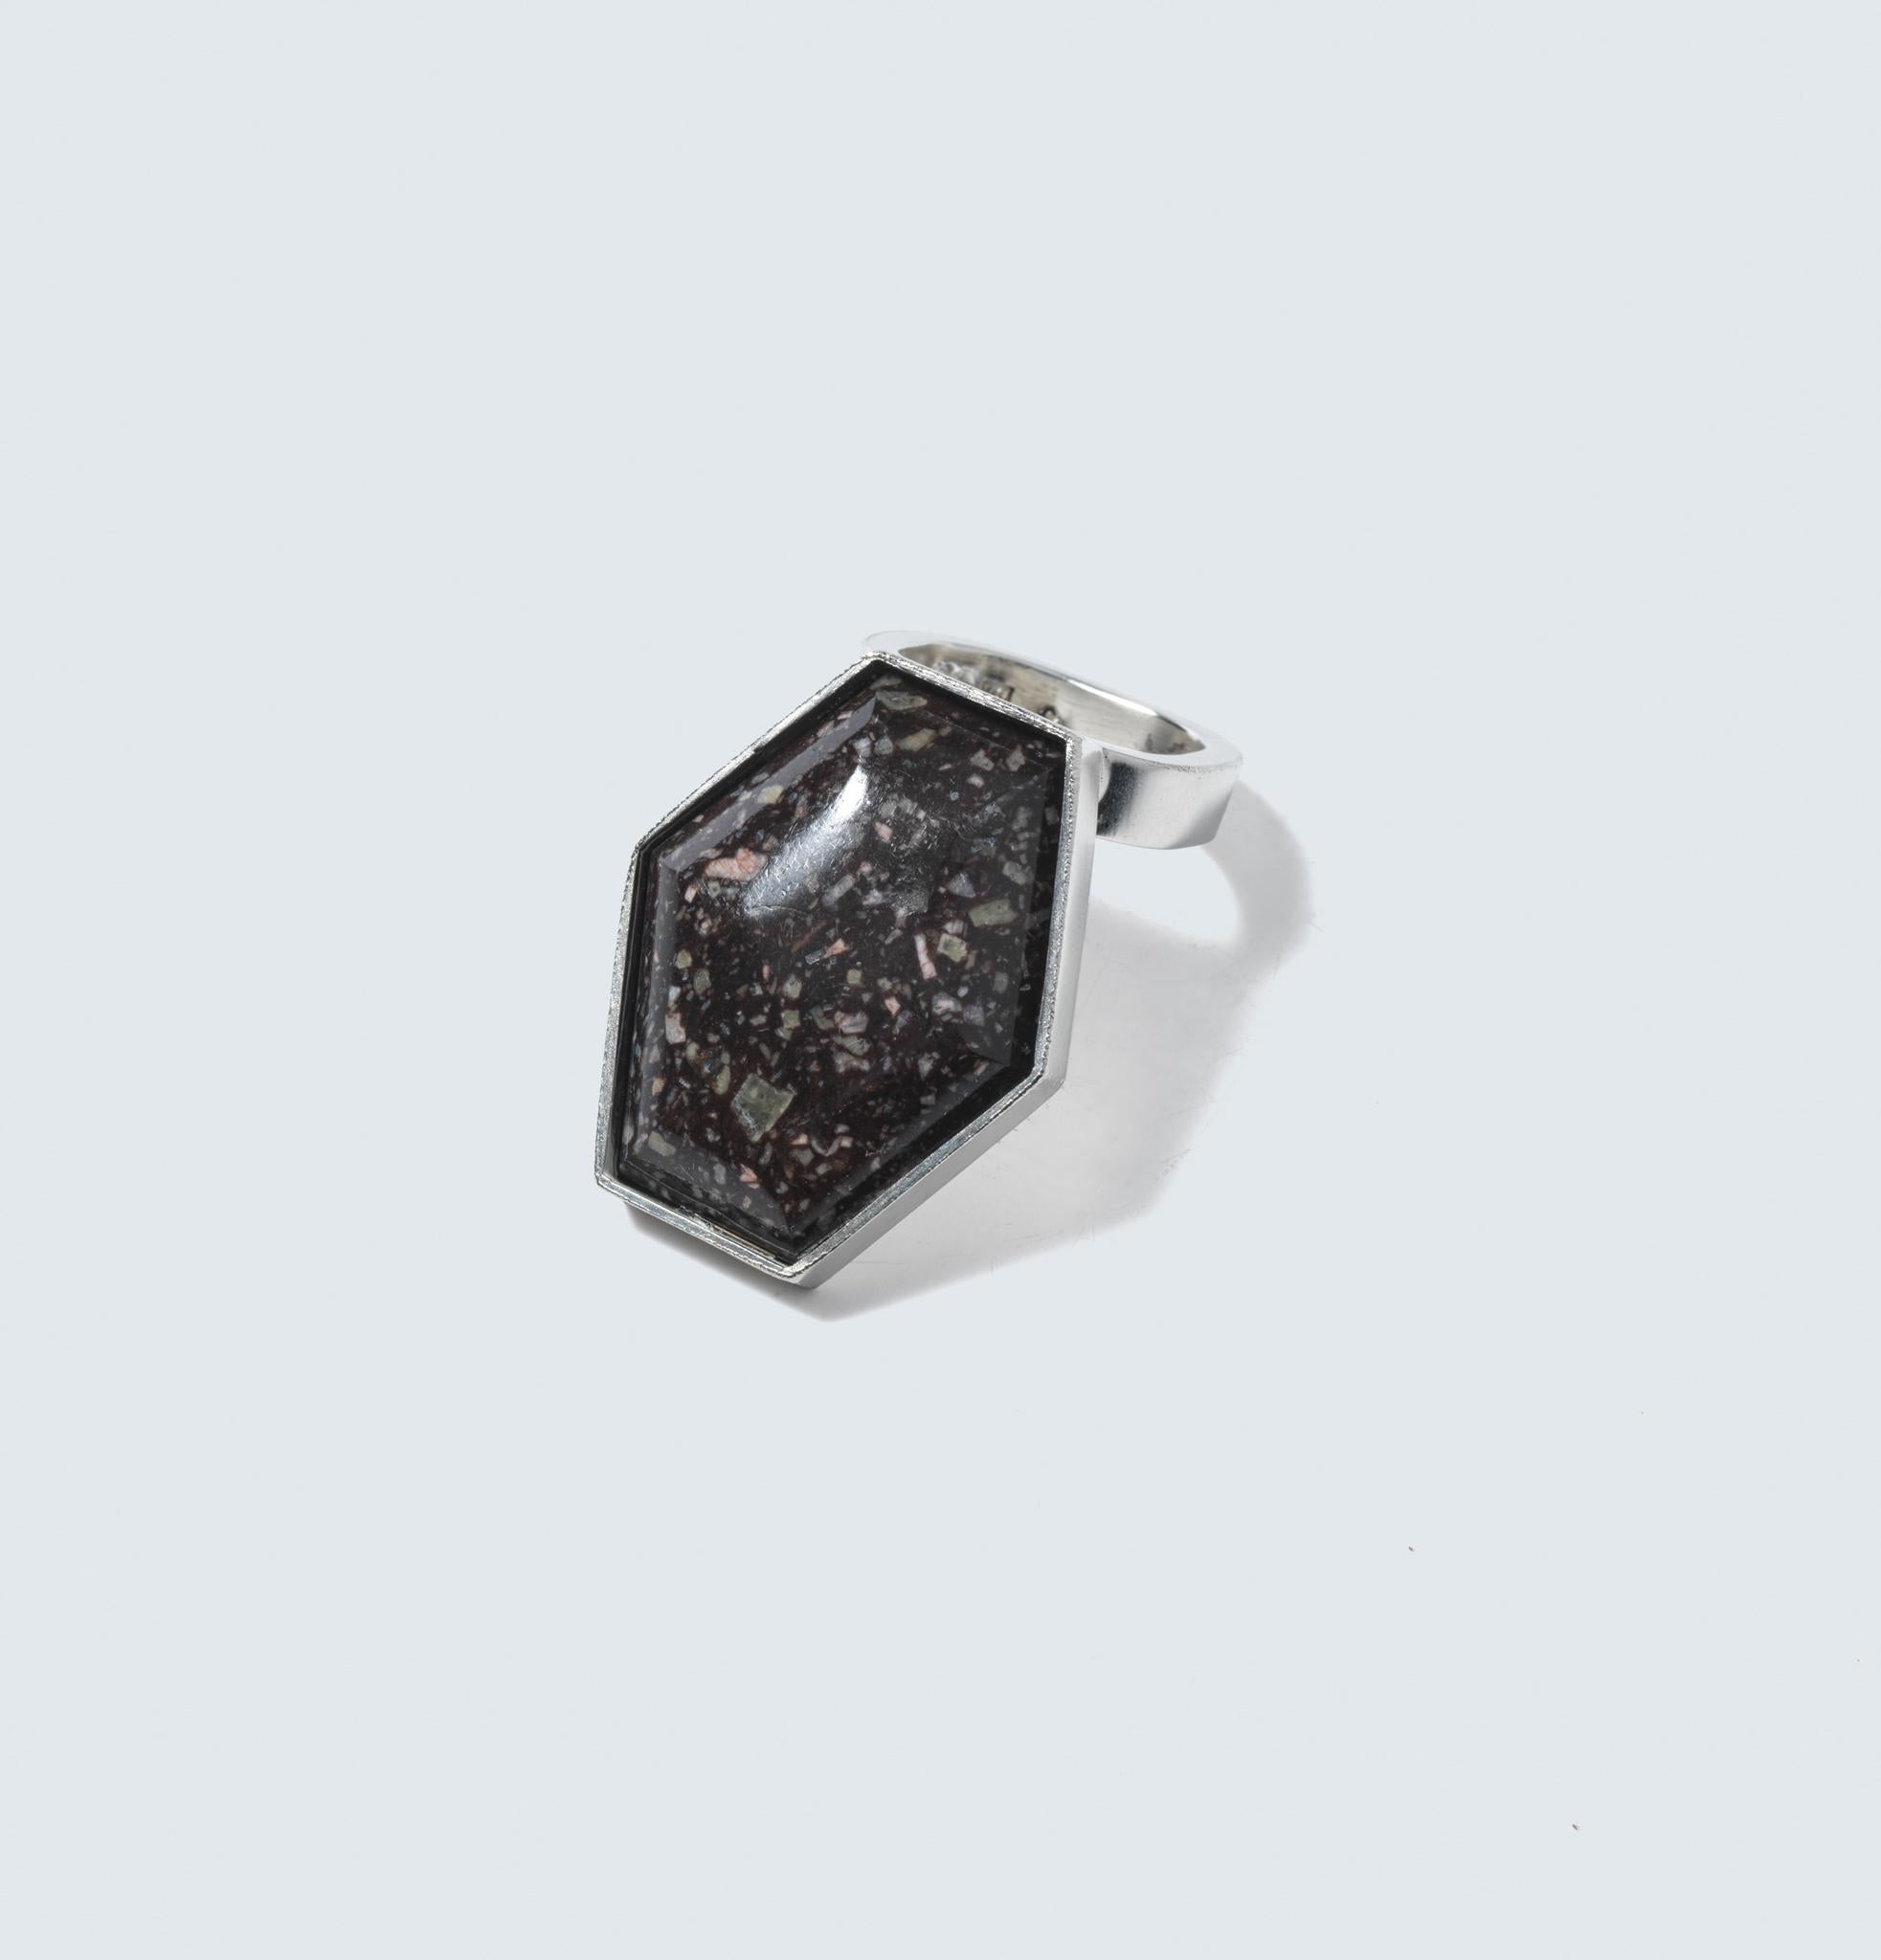 Dieser prächtige Ring verkörpert die Essenz von Forsbergs Handwerkskunst, indem er Sterlingsilber mit dem erdigen Charme des Porphyrs zu einem wahrhaft einzigartigen und fesselnden Schmuckstück verbindet. Der Ring besteht aus einem breiten, flachen